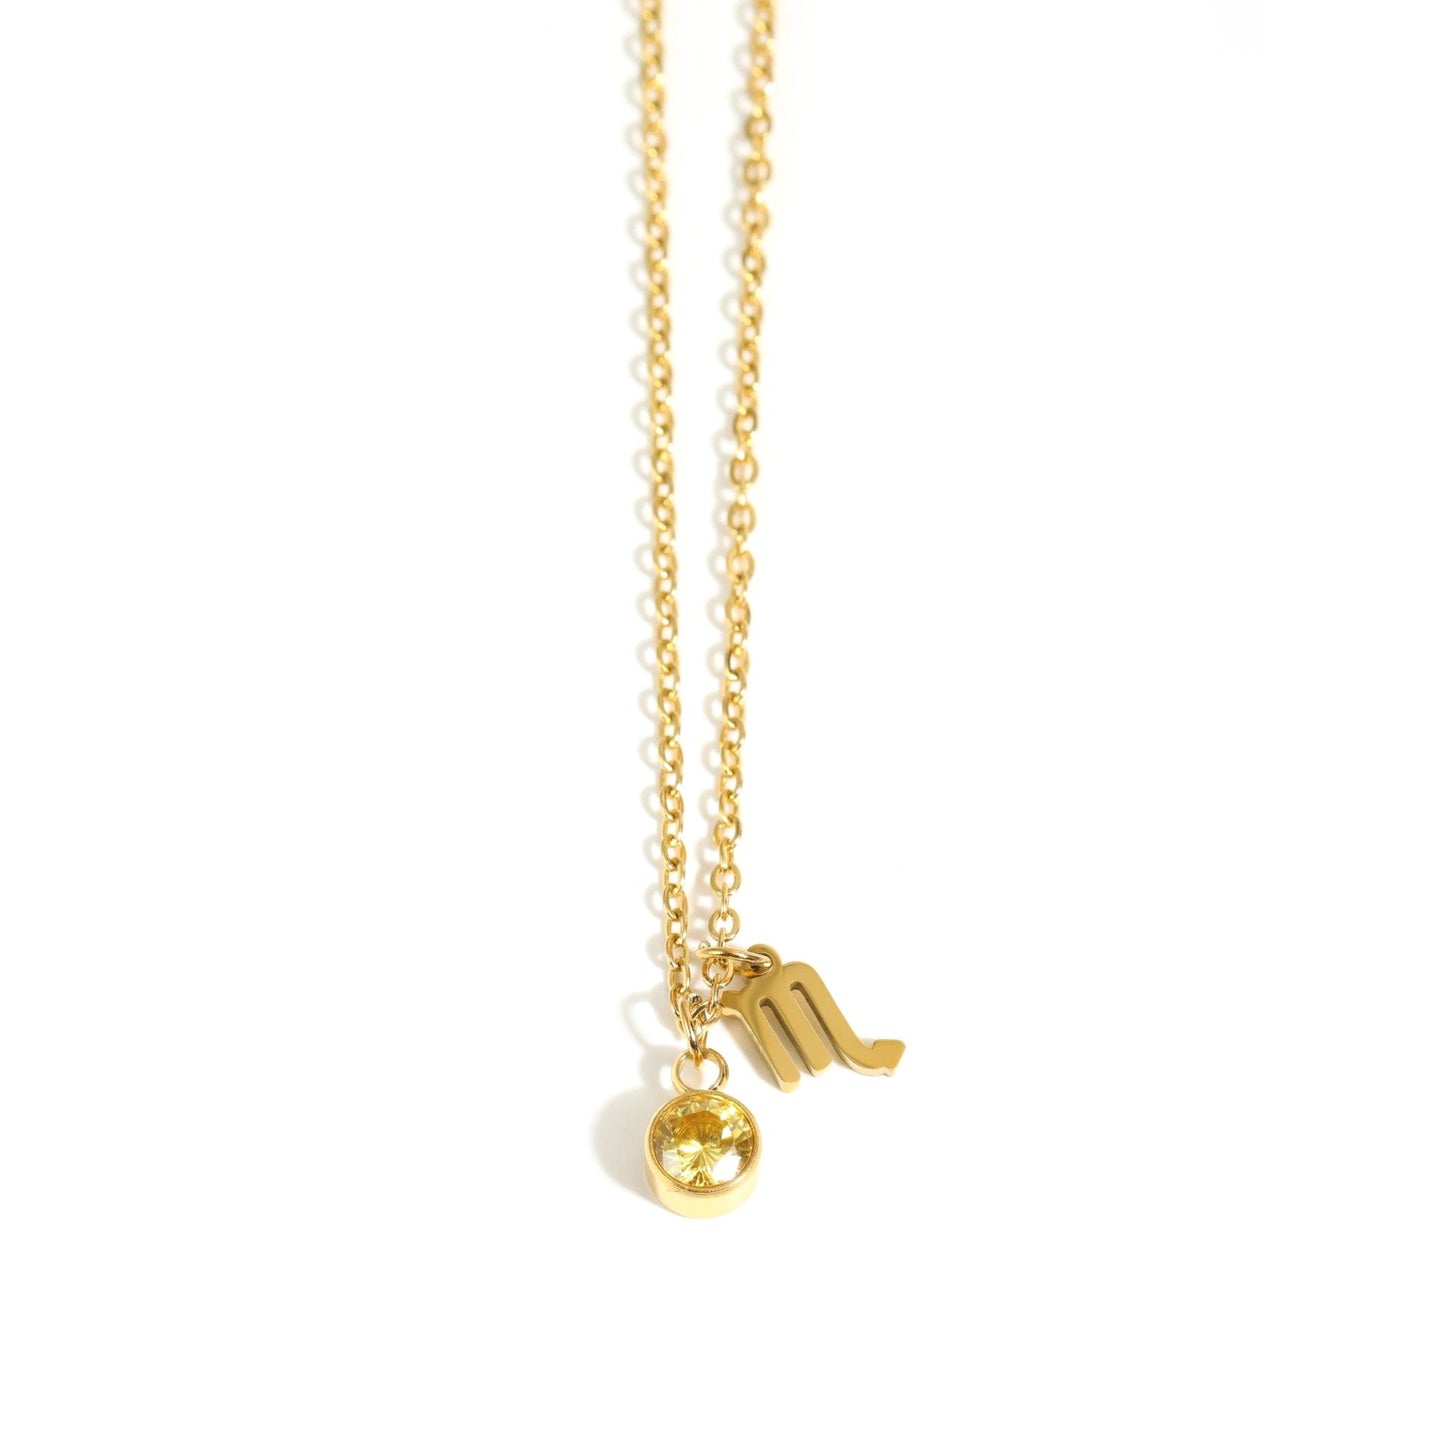 Scorpio Zodiac Sign Birthstone Gold Necklace.